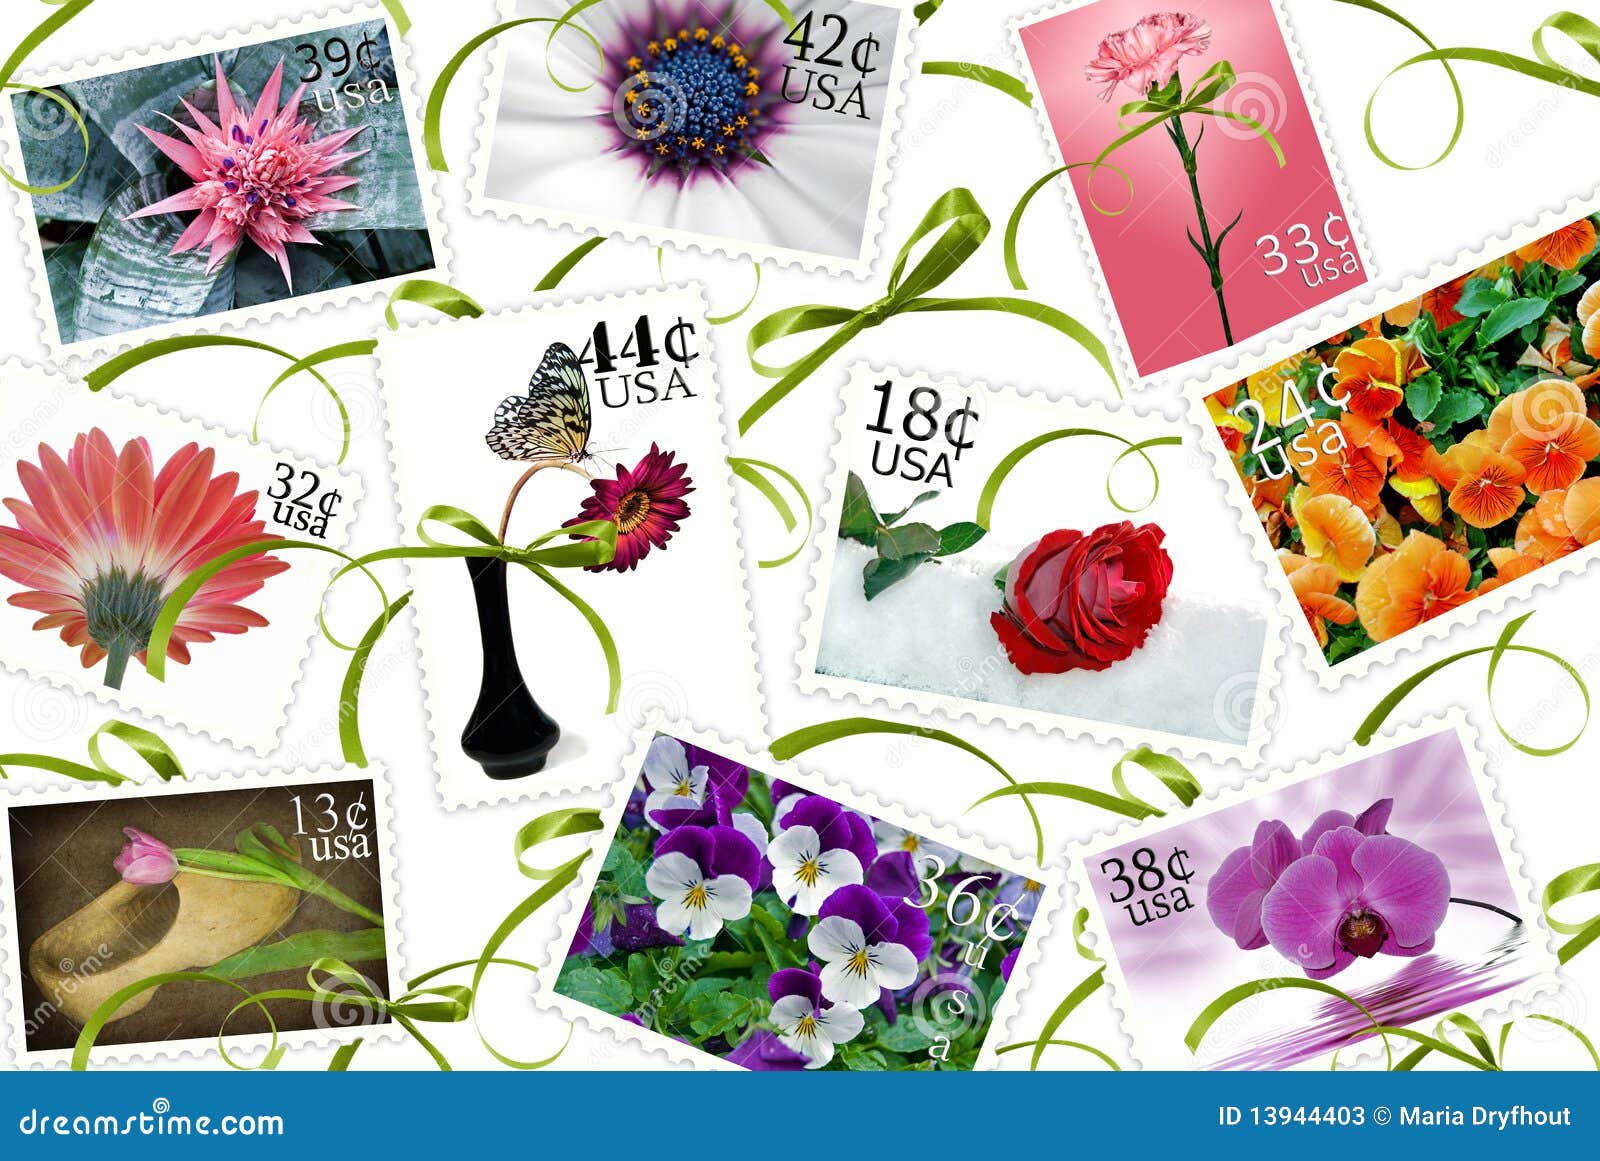 Floral Stamps stock illustration. Illustration of postal - 13944403